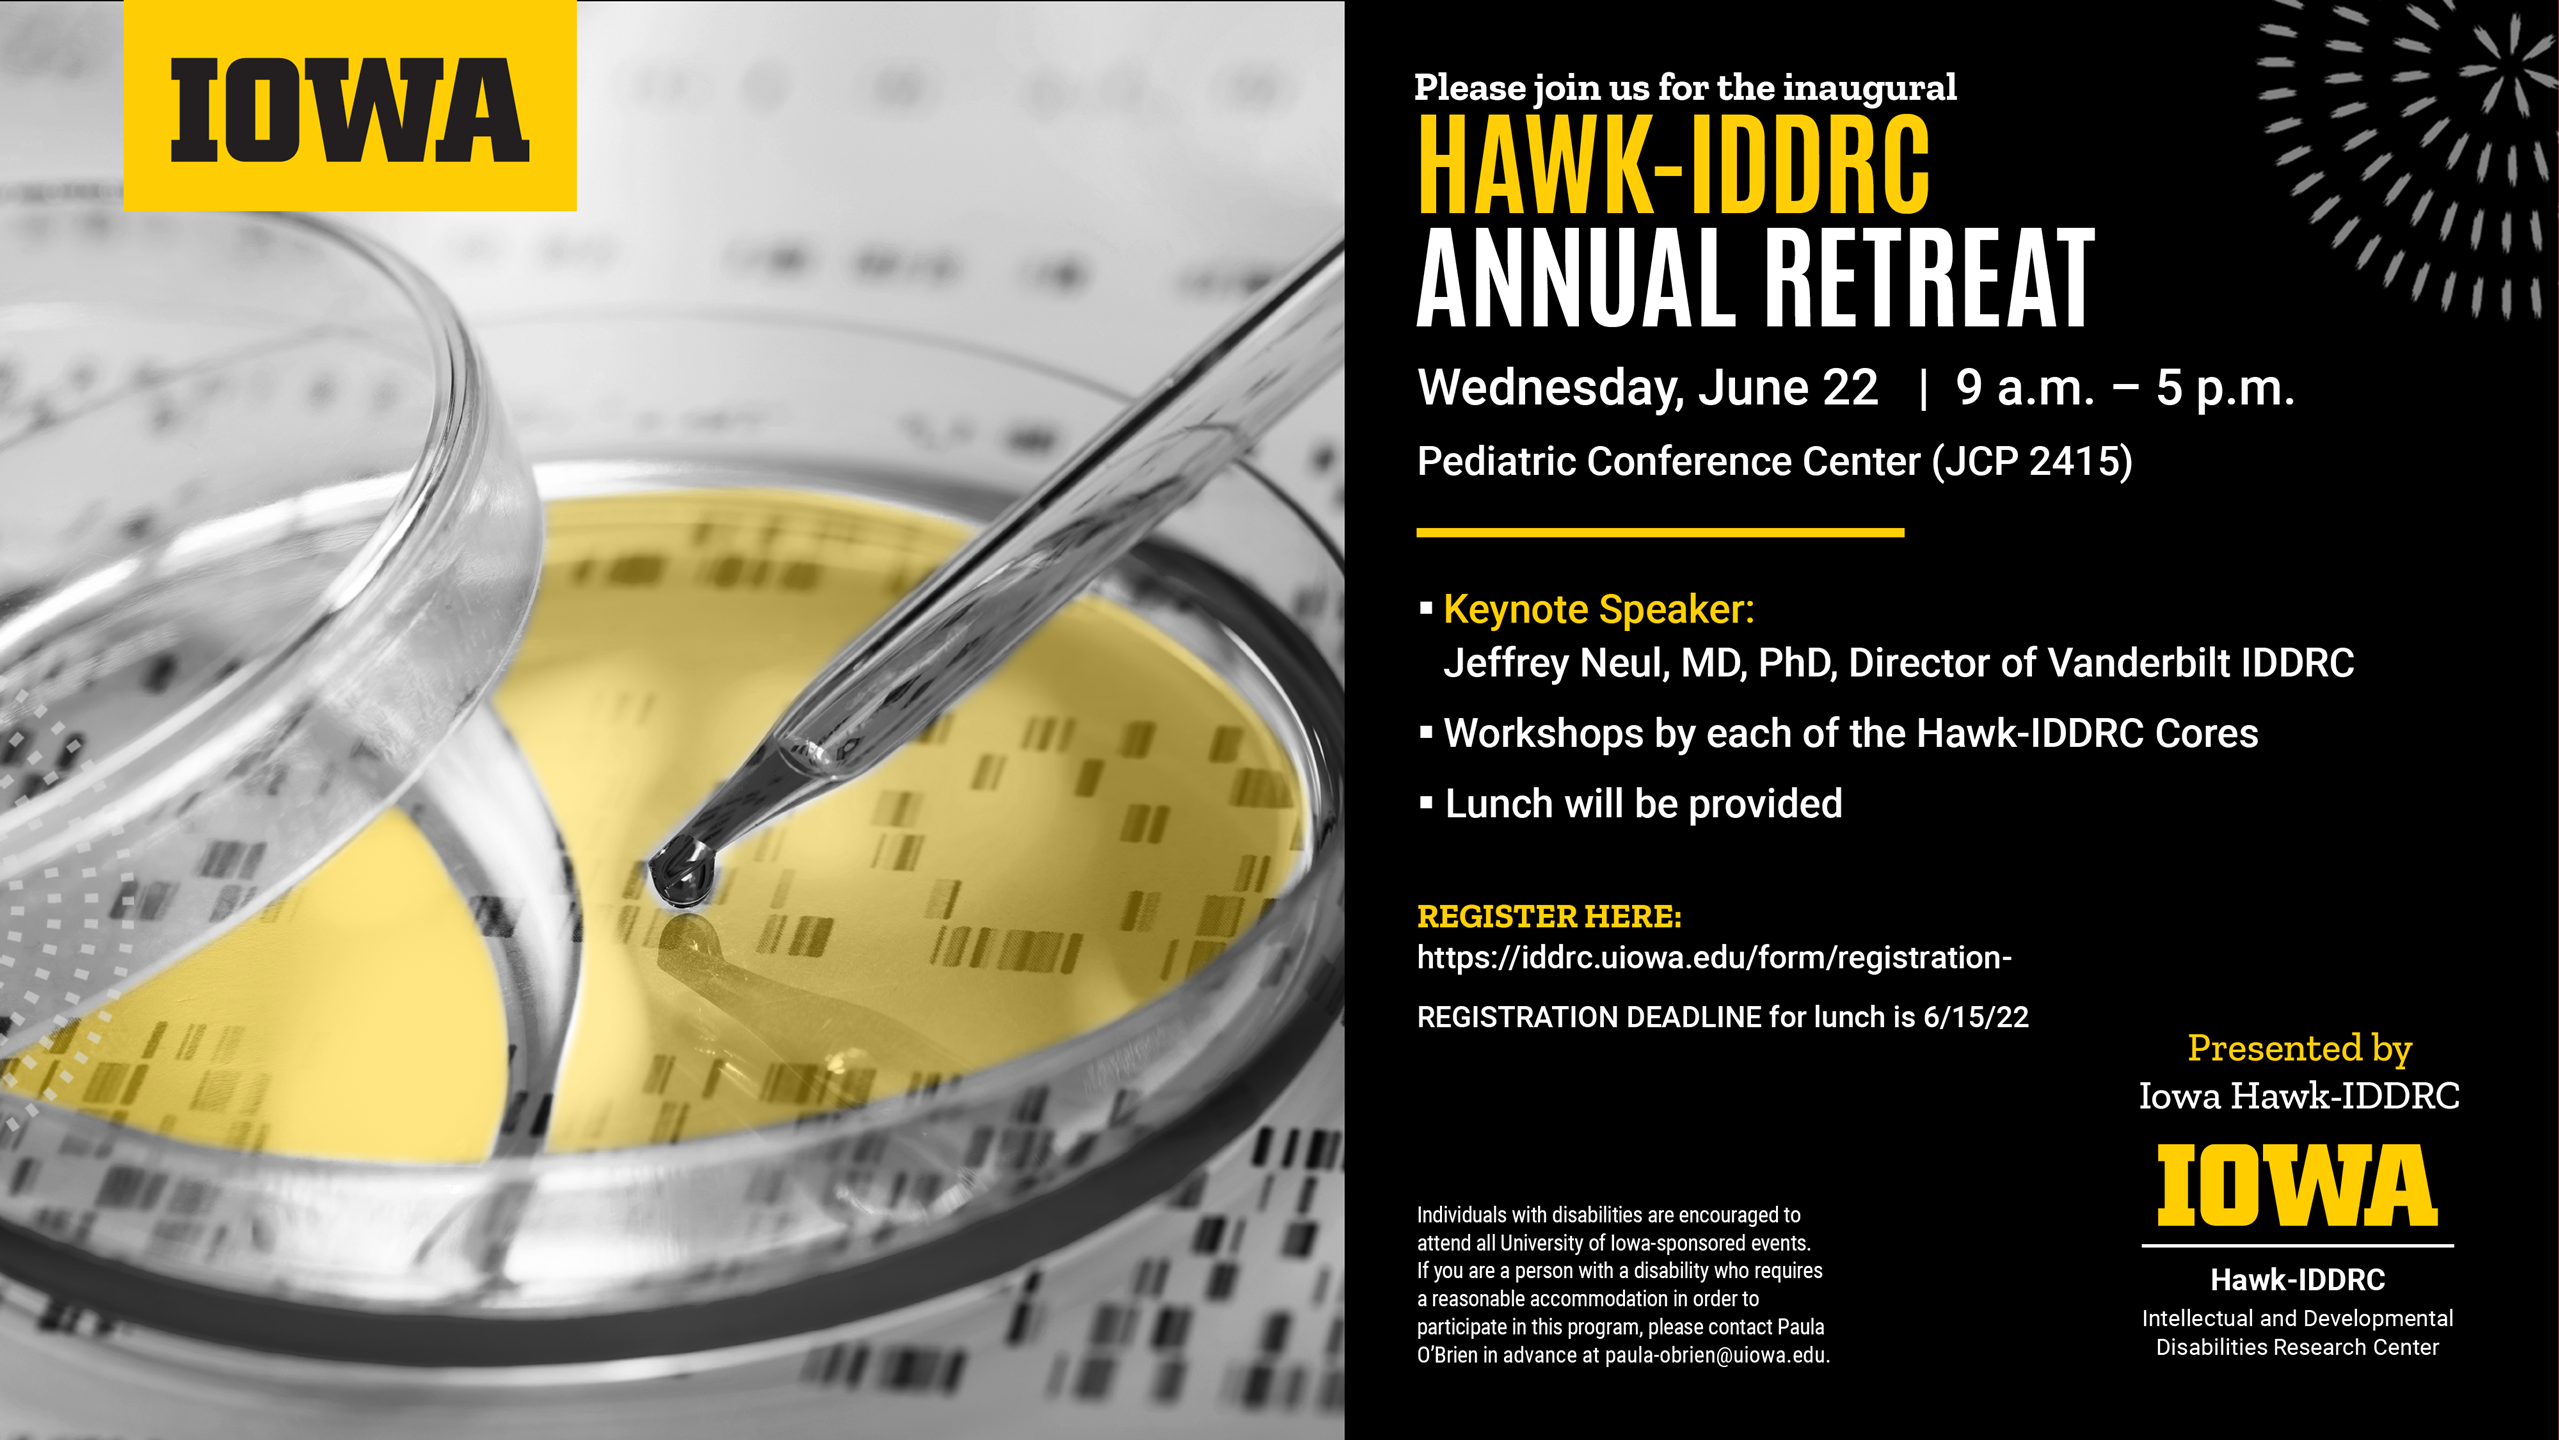 HAWK-IDDRC Annual Retreat June 22